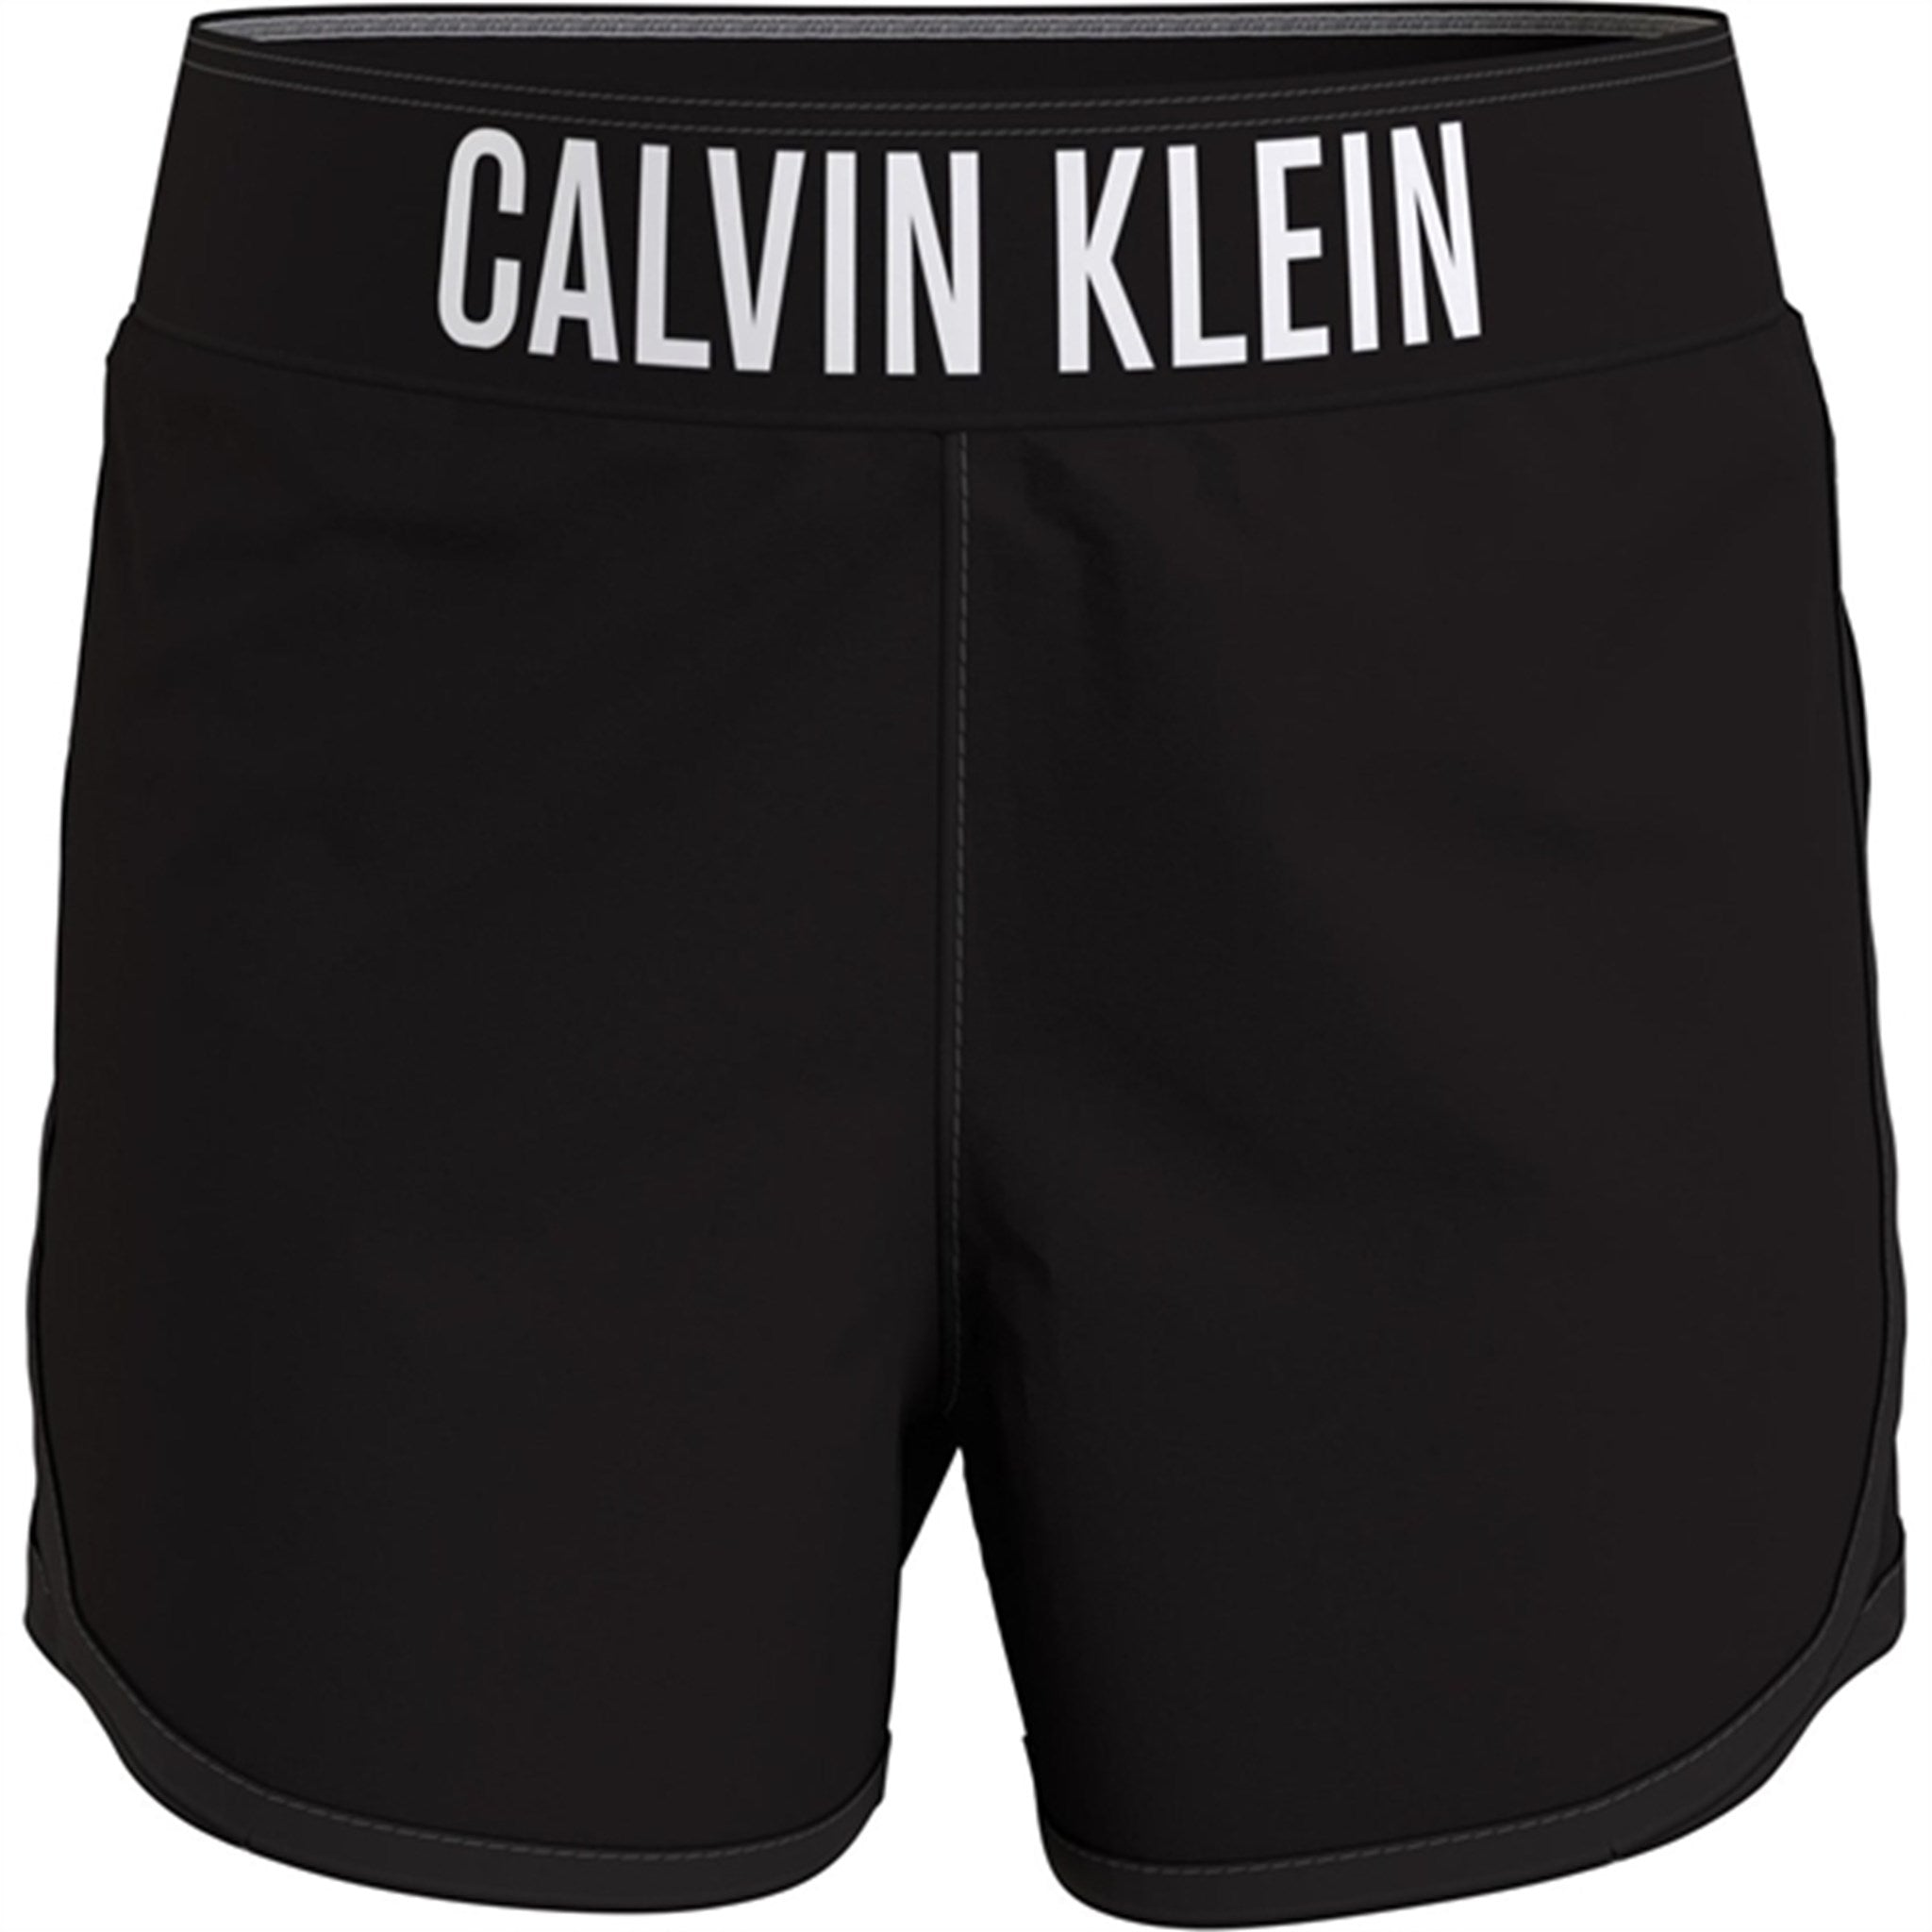 Calvin Klein Shorts Pvh Black